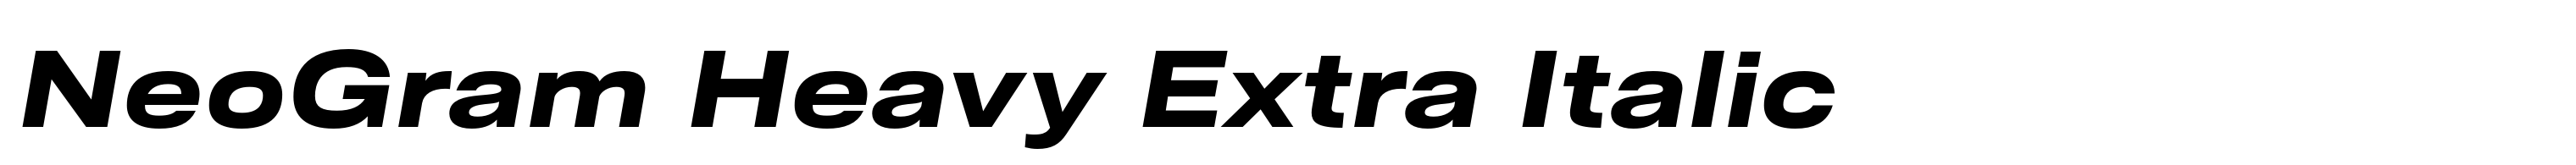 NeoGram Heavy Extra Italic